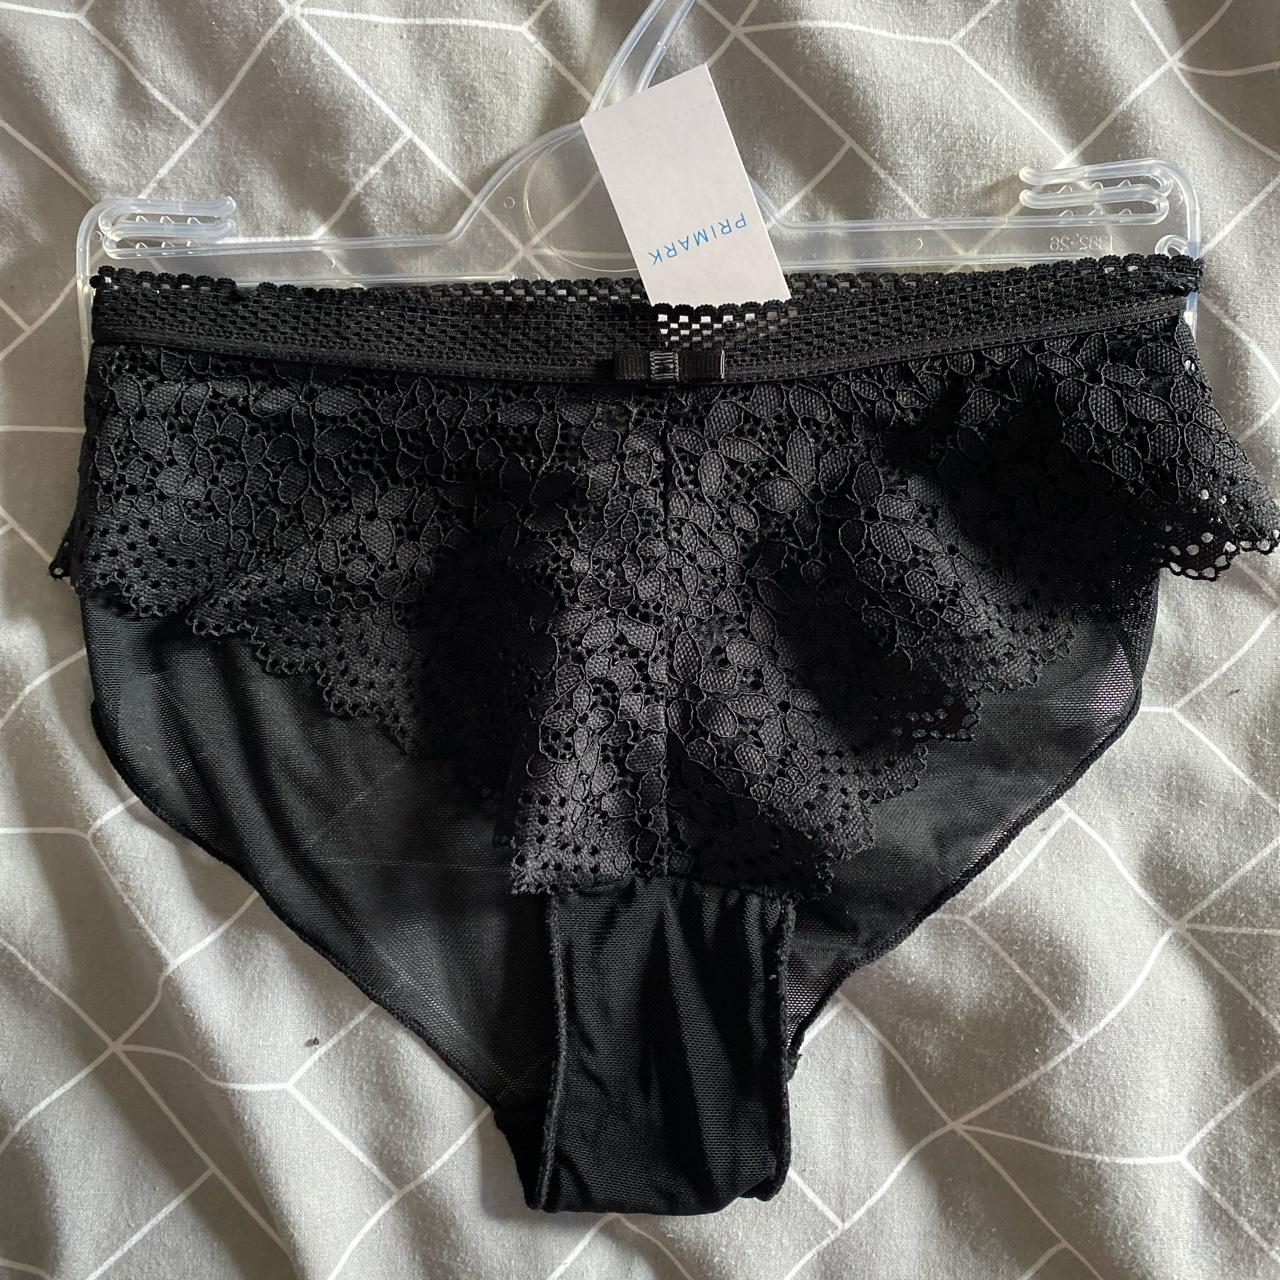 Primark underwear - Depop